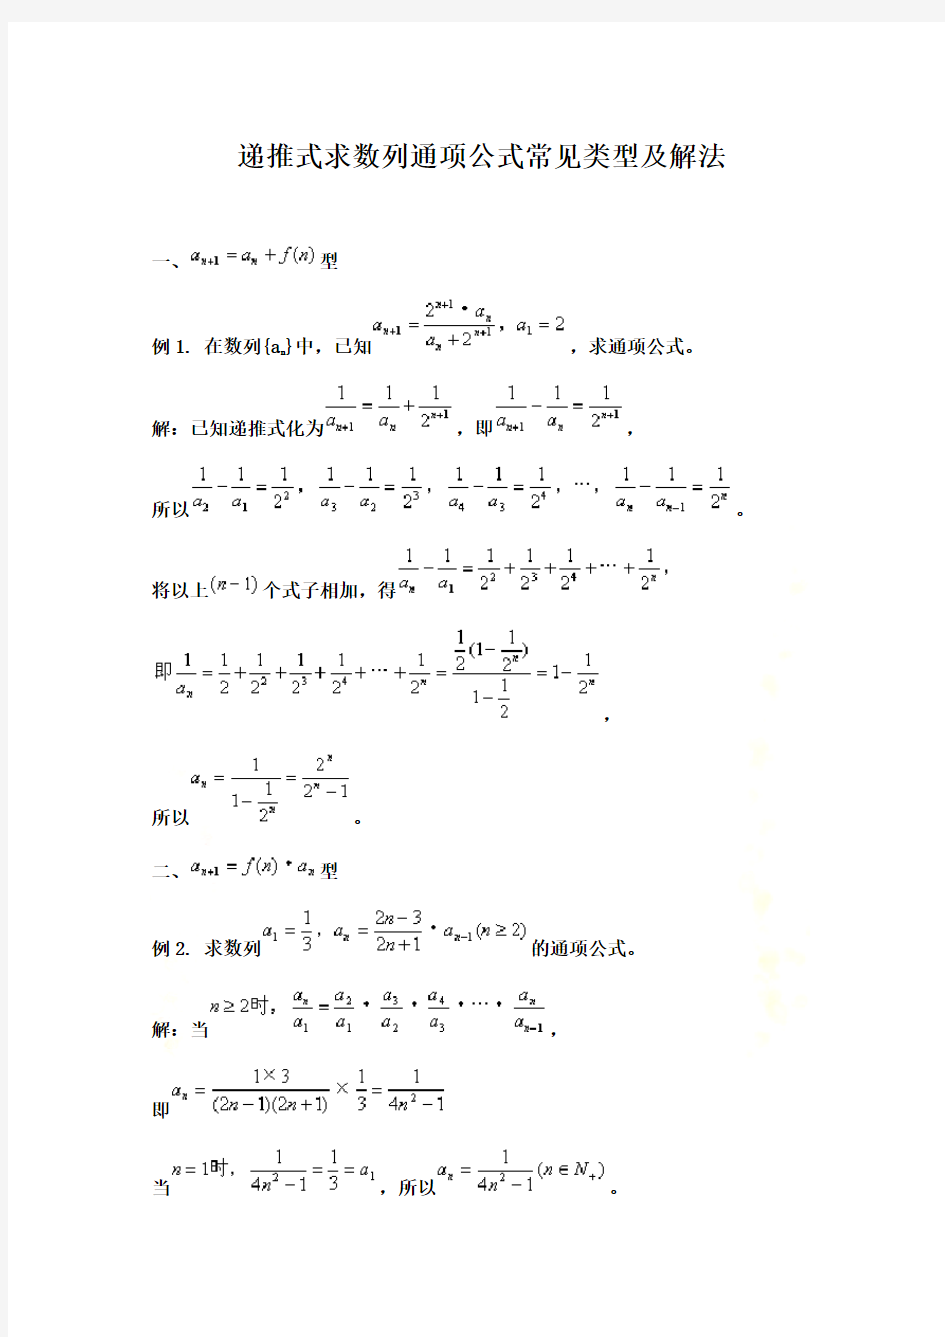 数列通项公式求解及用放缩法和数学归纳法证明数